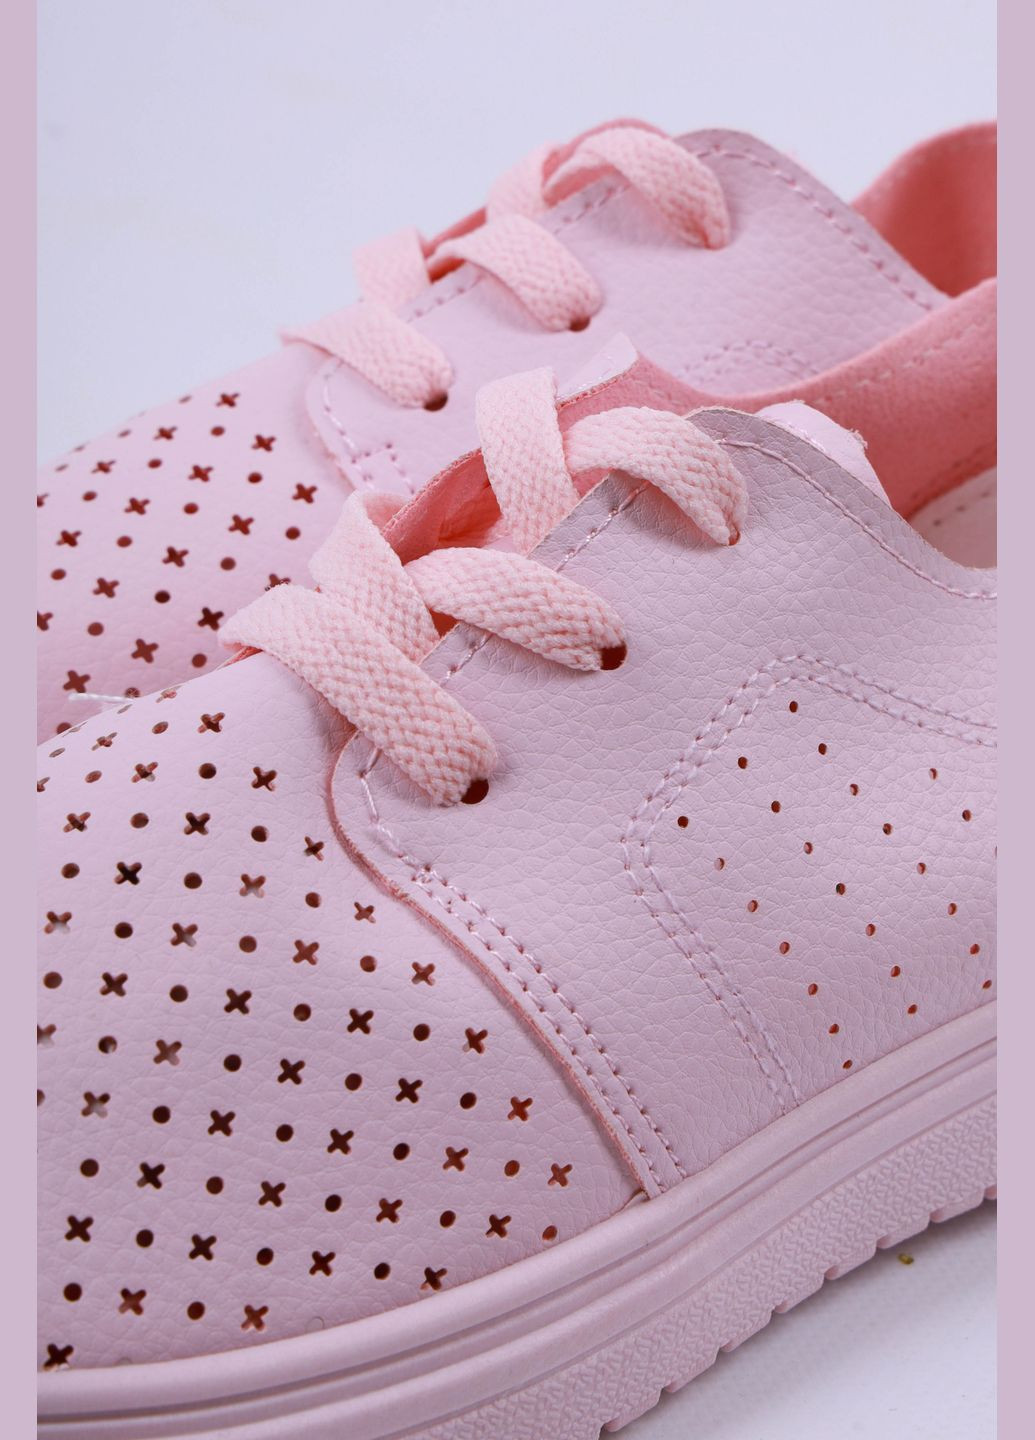 Розовые мокасины женские розового цвета на шнуровке Let's Shop